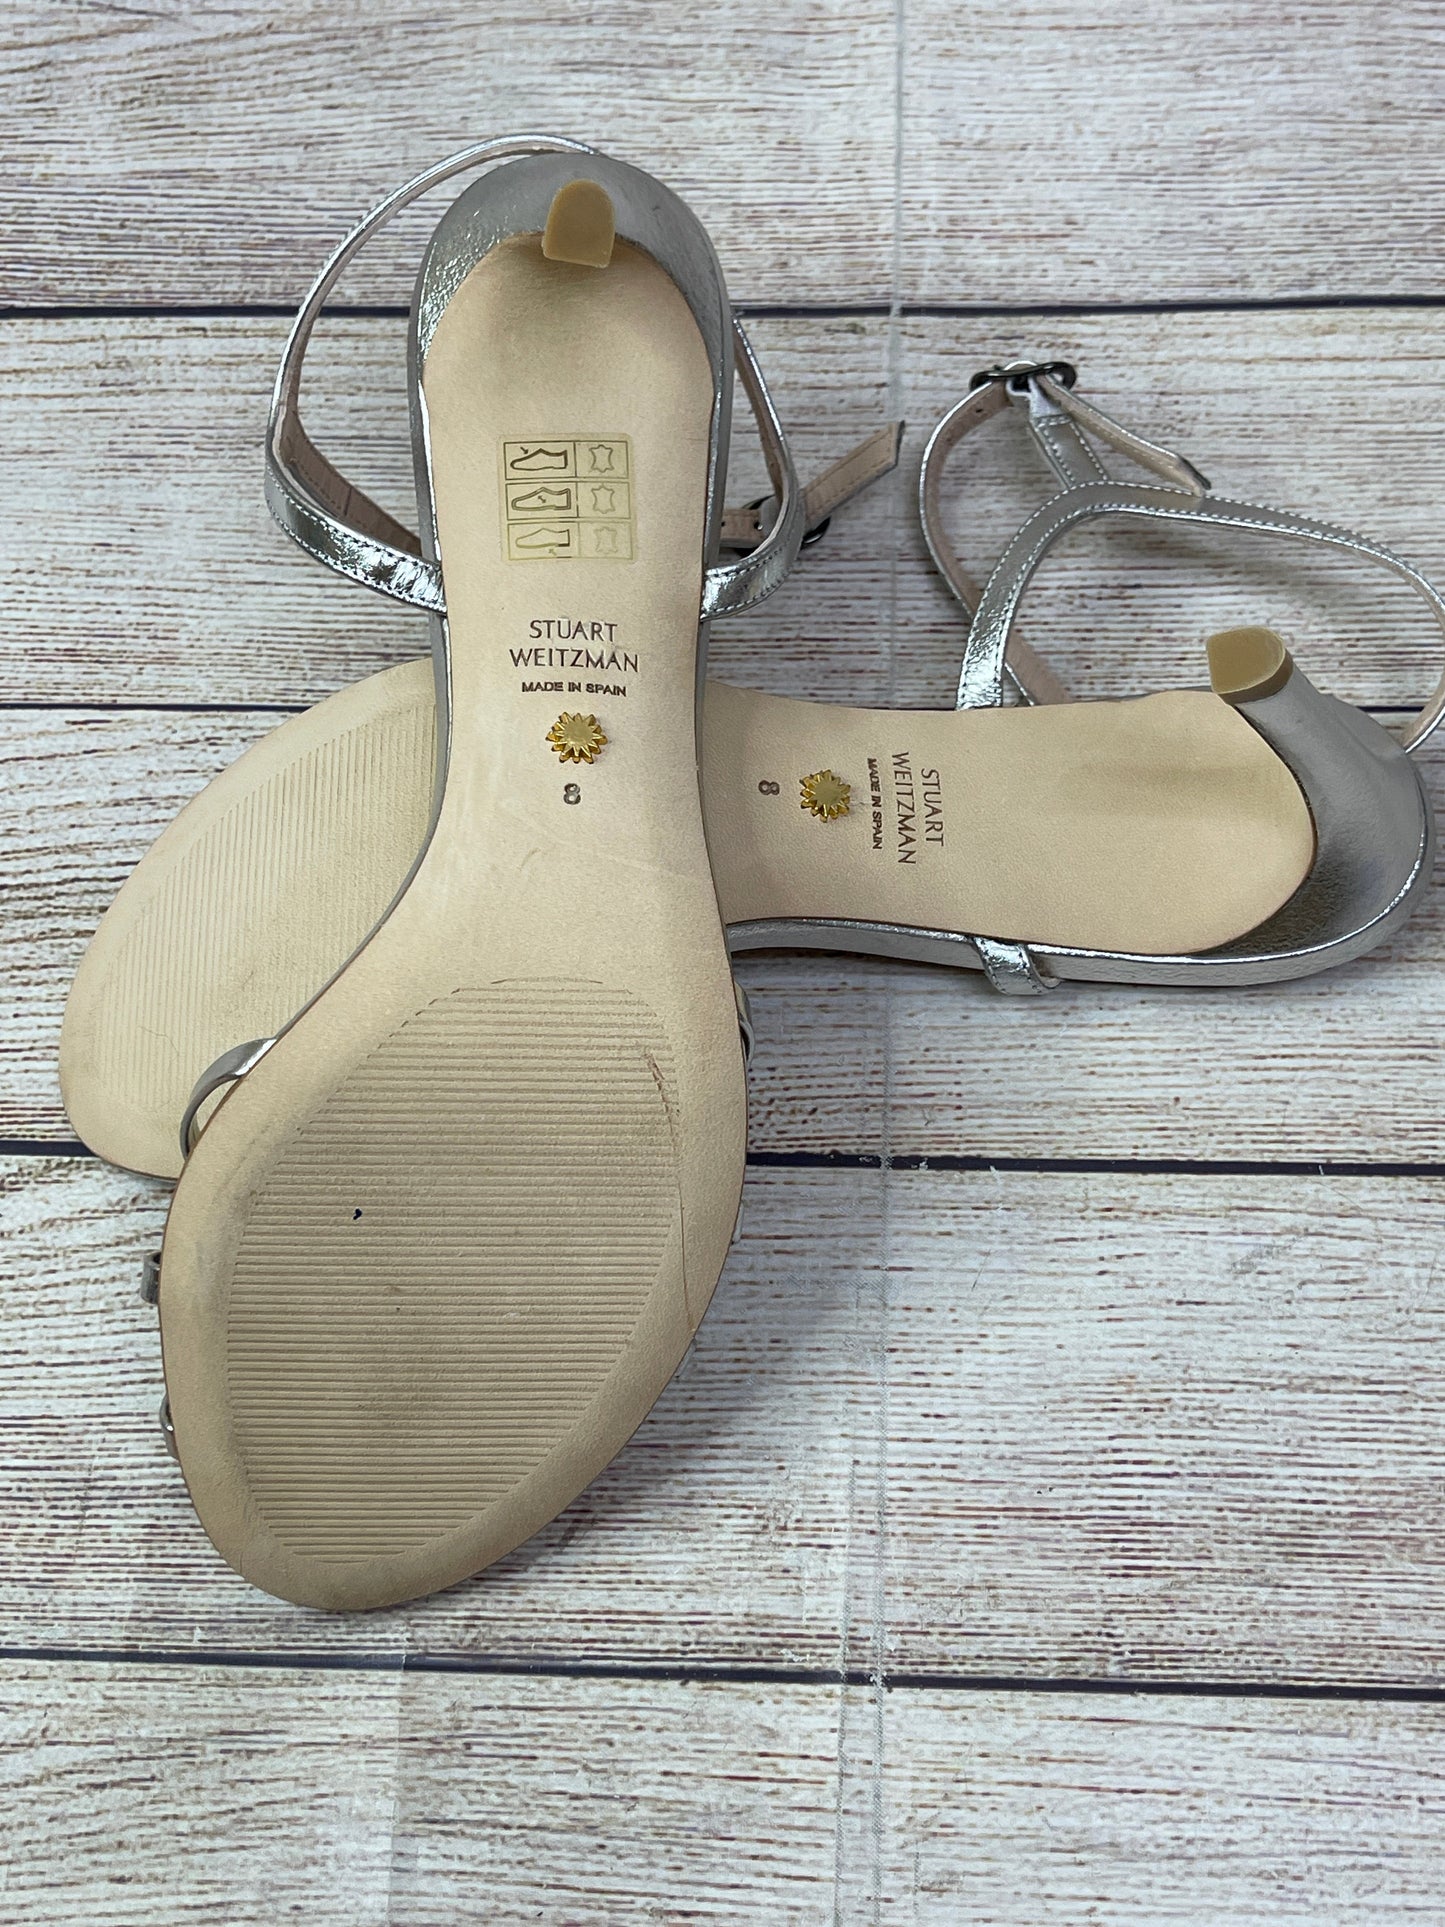 Silver Sandals Heels Stiletto Stuart Weitzman, Size 8